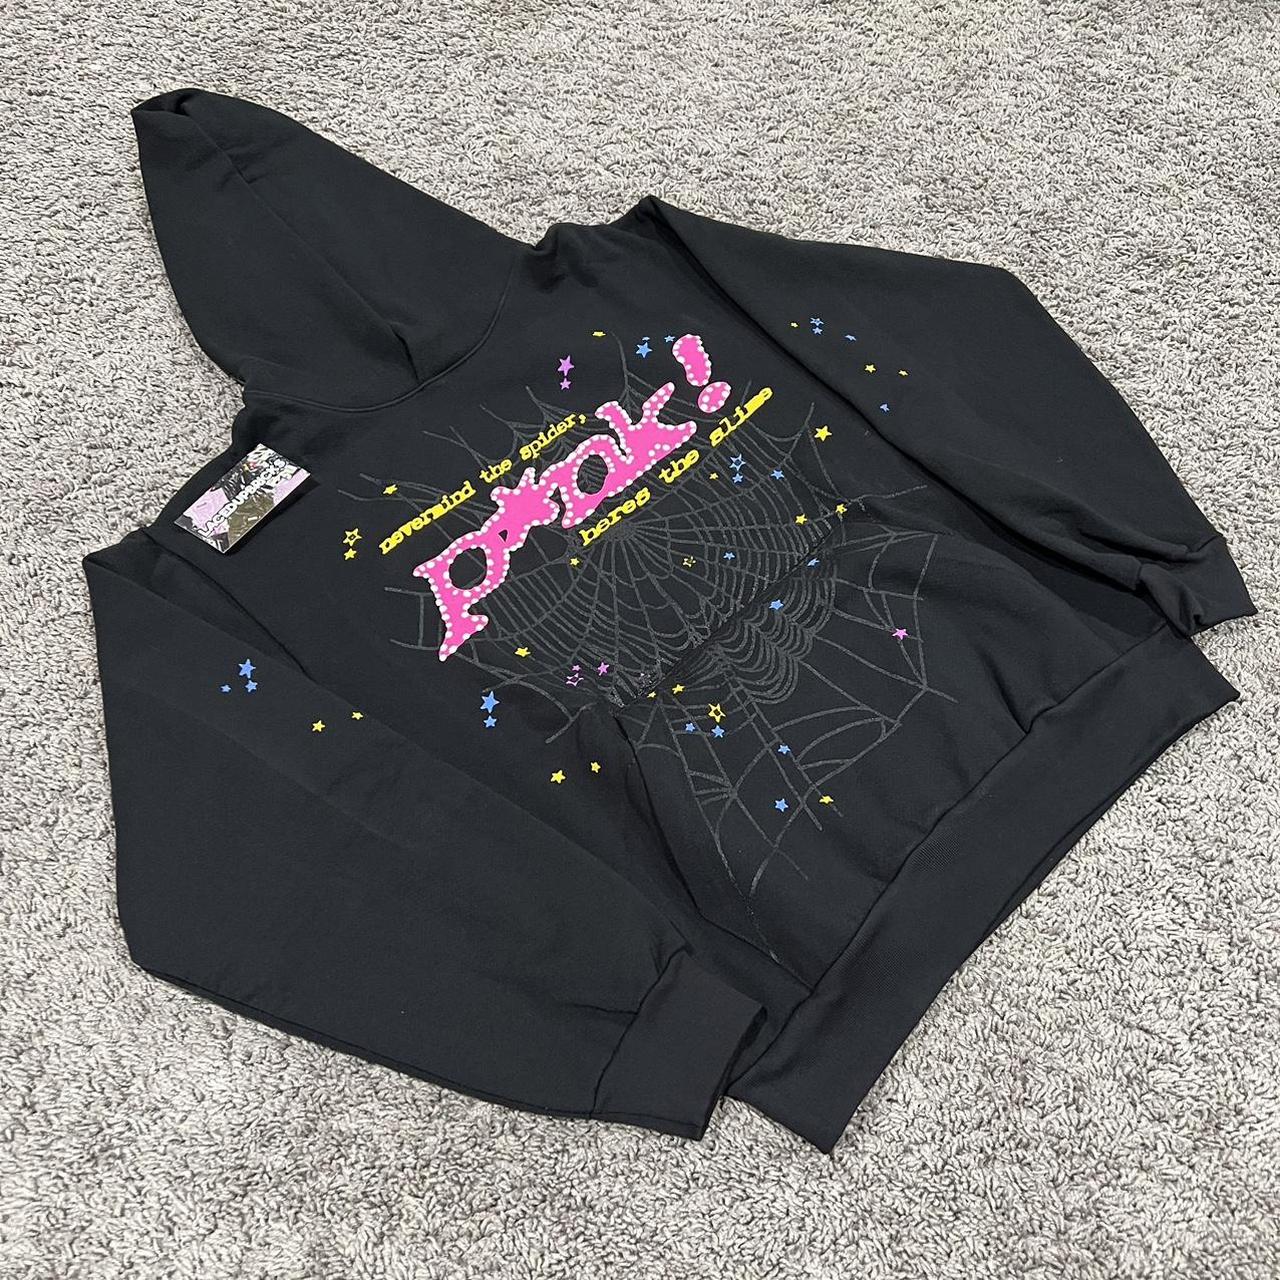 Black and pink San Diego hoodie. I love this piece - Depop